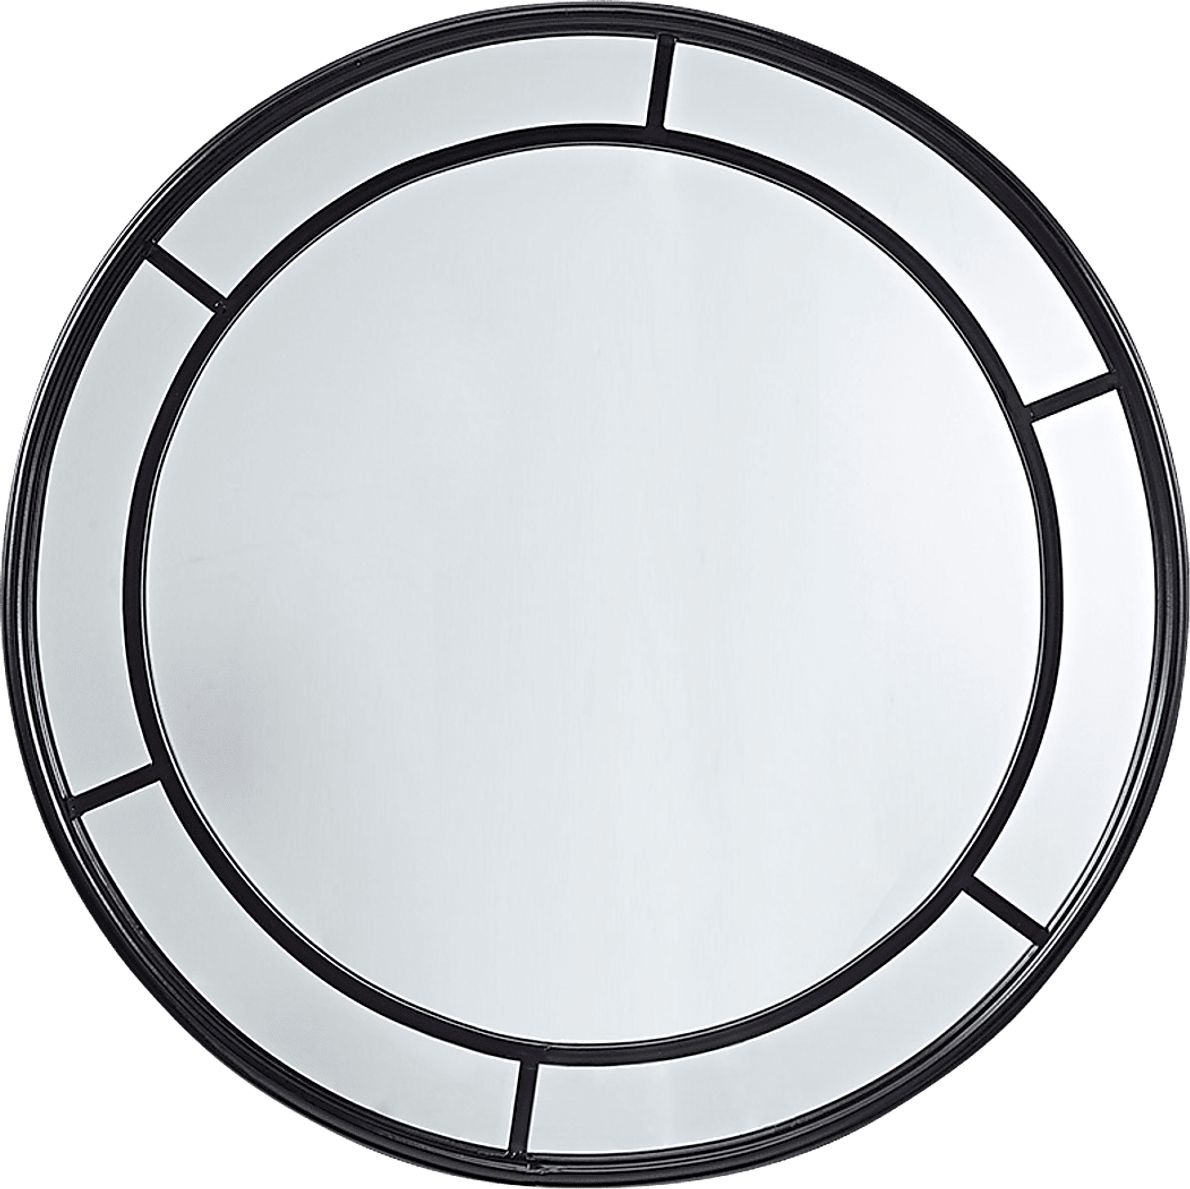 Defremery Black Round Wall Mirror